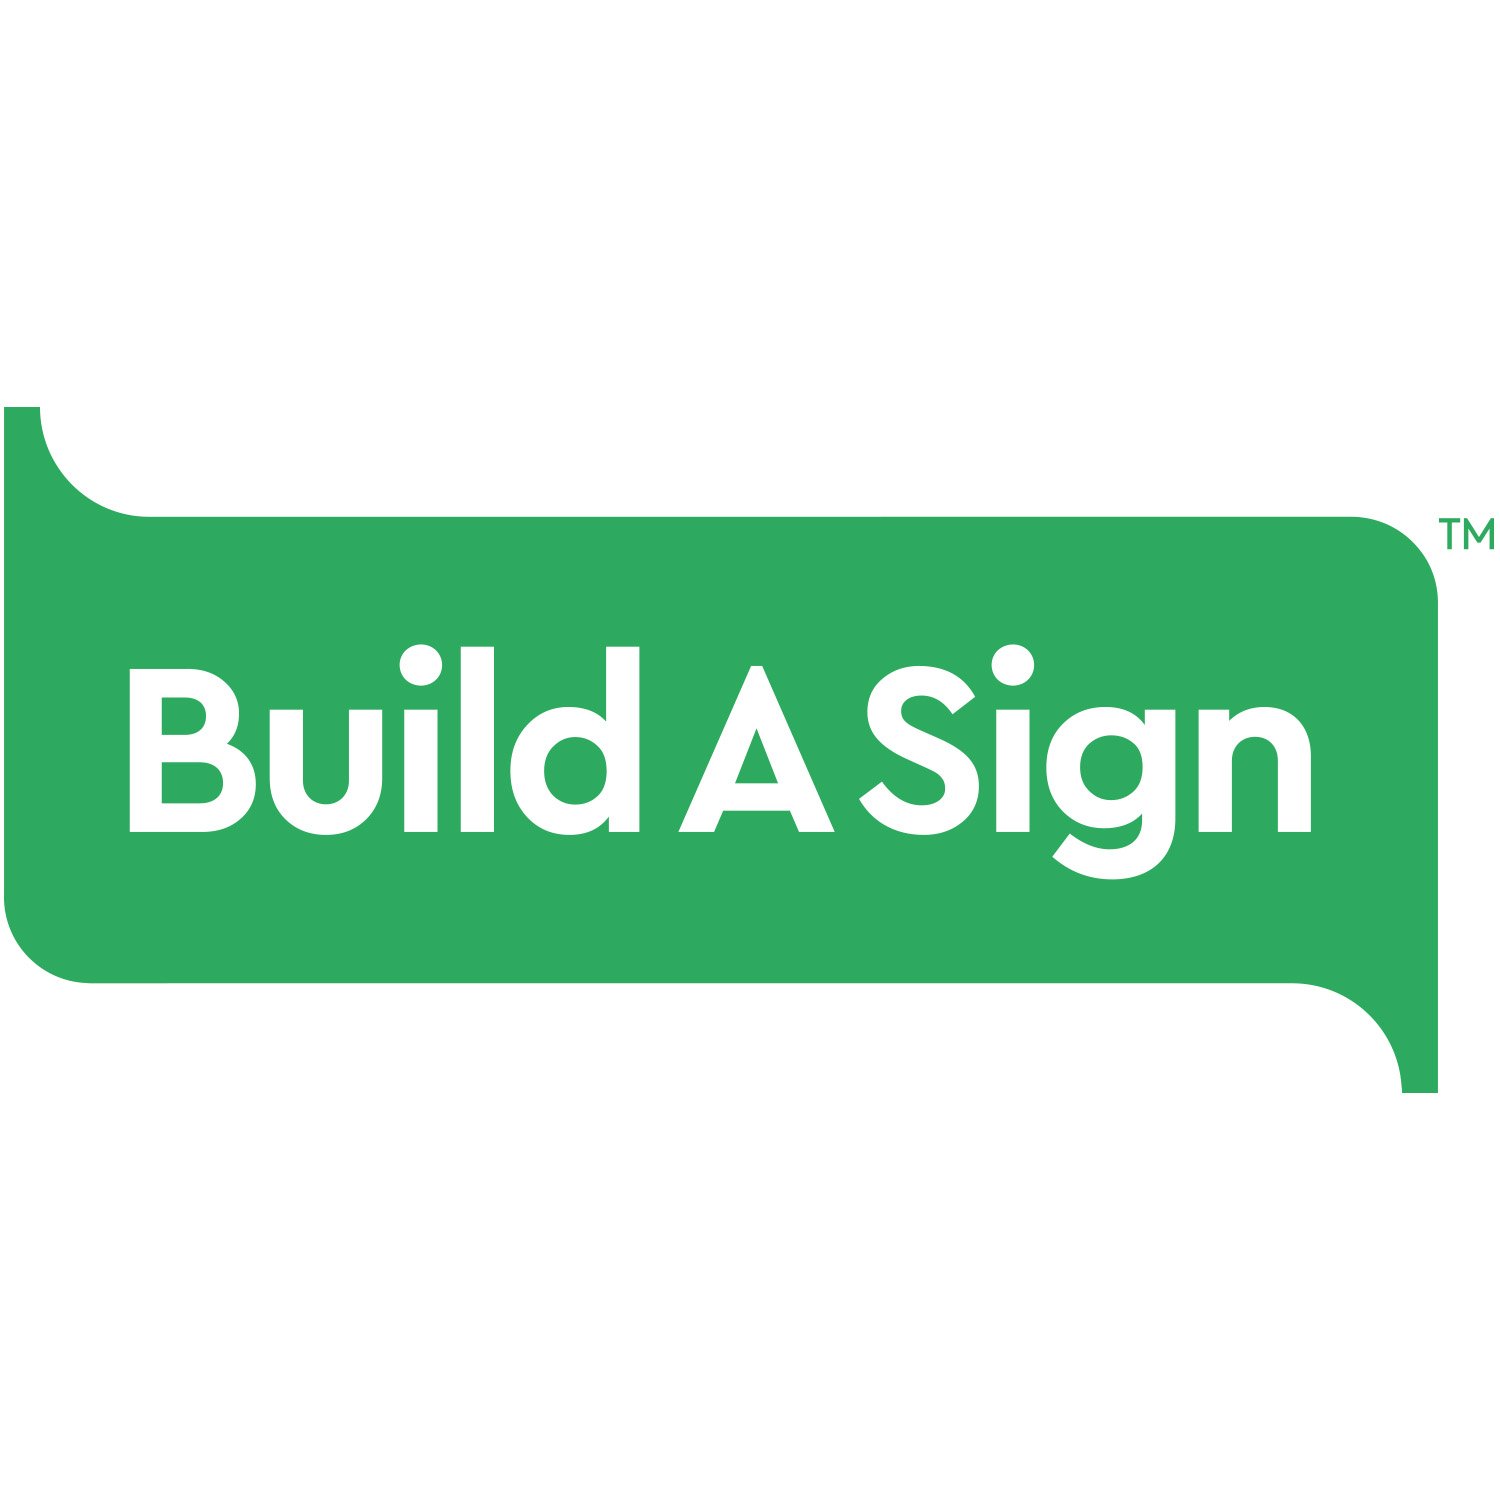 Build A Sign_Full logo.jpg